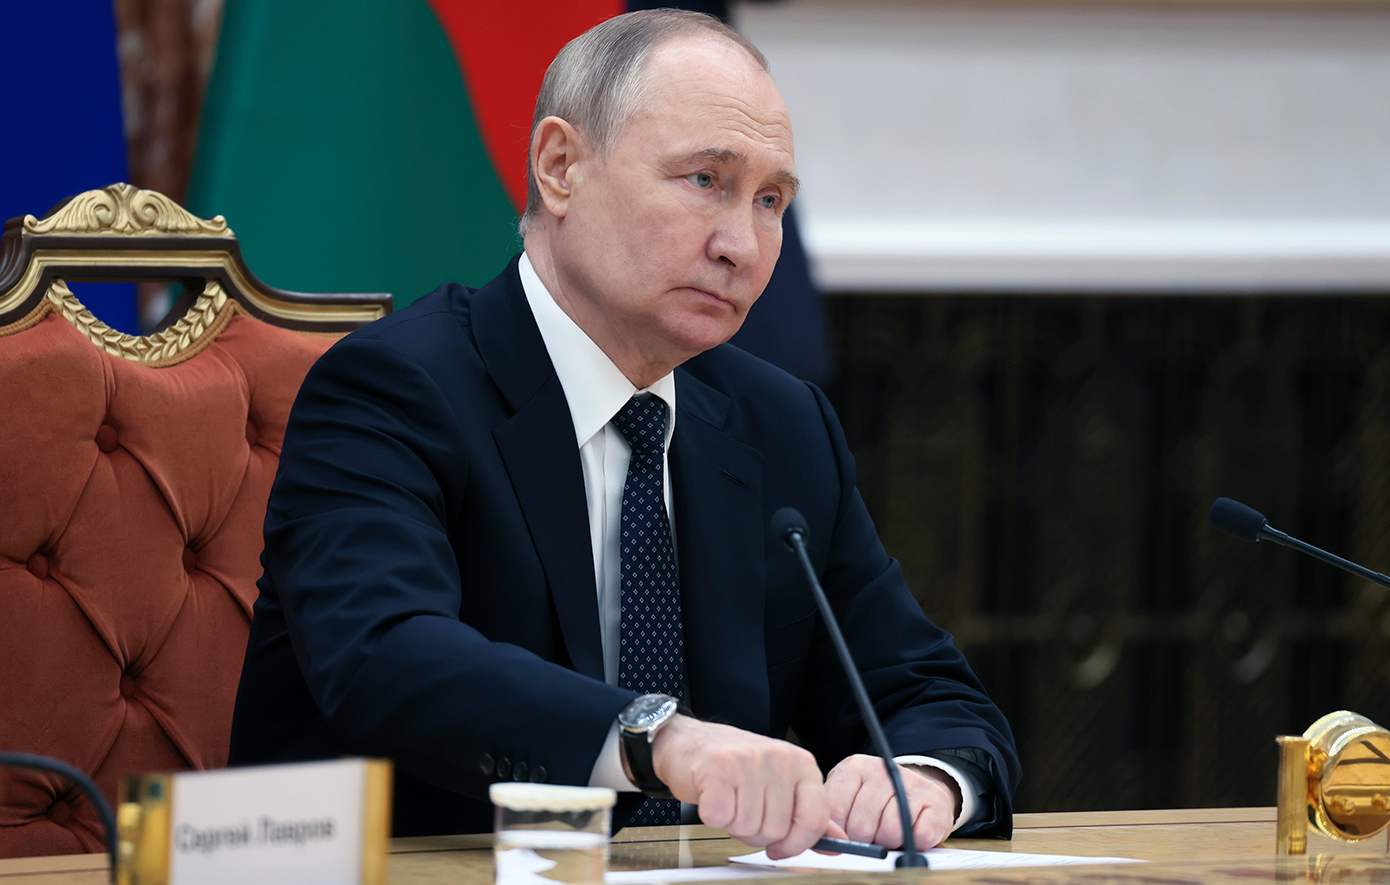 Πούτιν: Η Μόσχα θα αναπτύξει το πυρηνικό της οπλοστάσιο για να διατηρήσει την παγκόσμια ισορροπία δυνάμεων